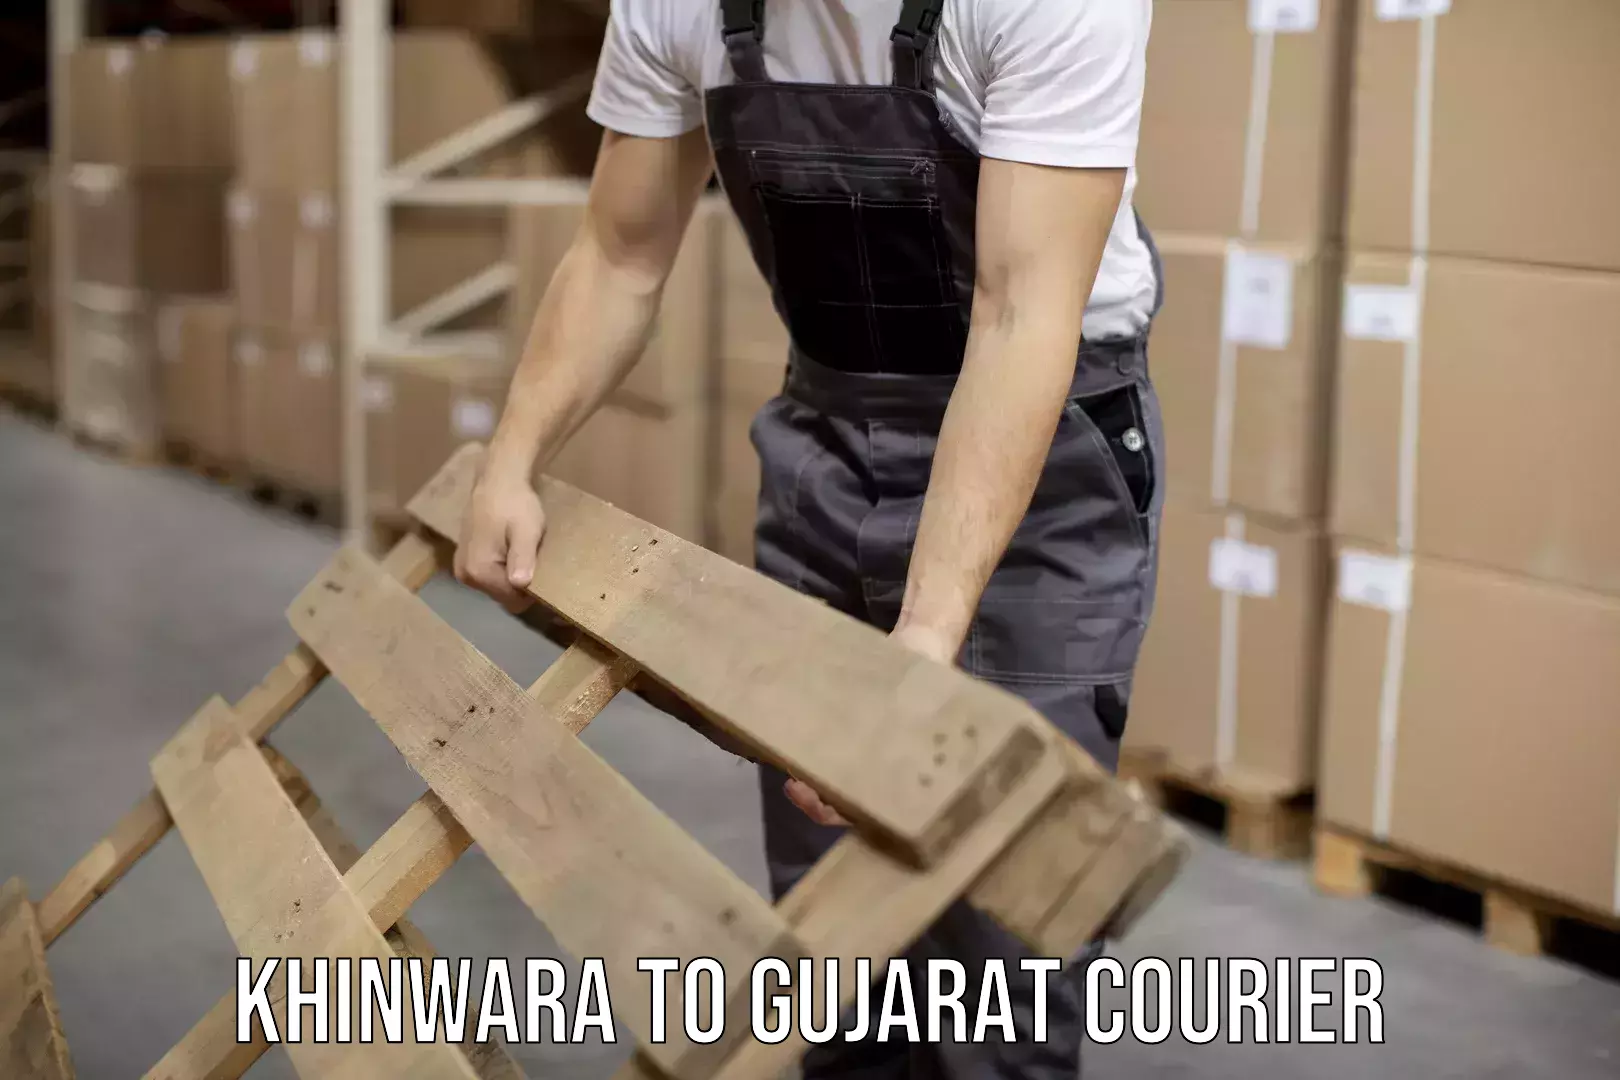 Custom courier packages in Khinwara to Gujarat